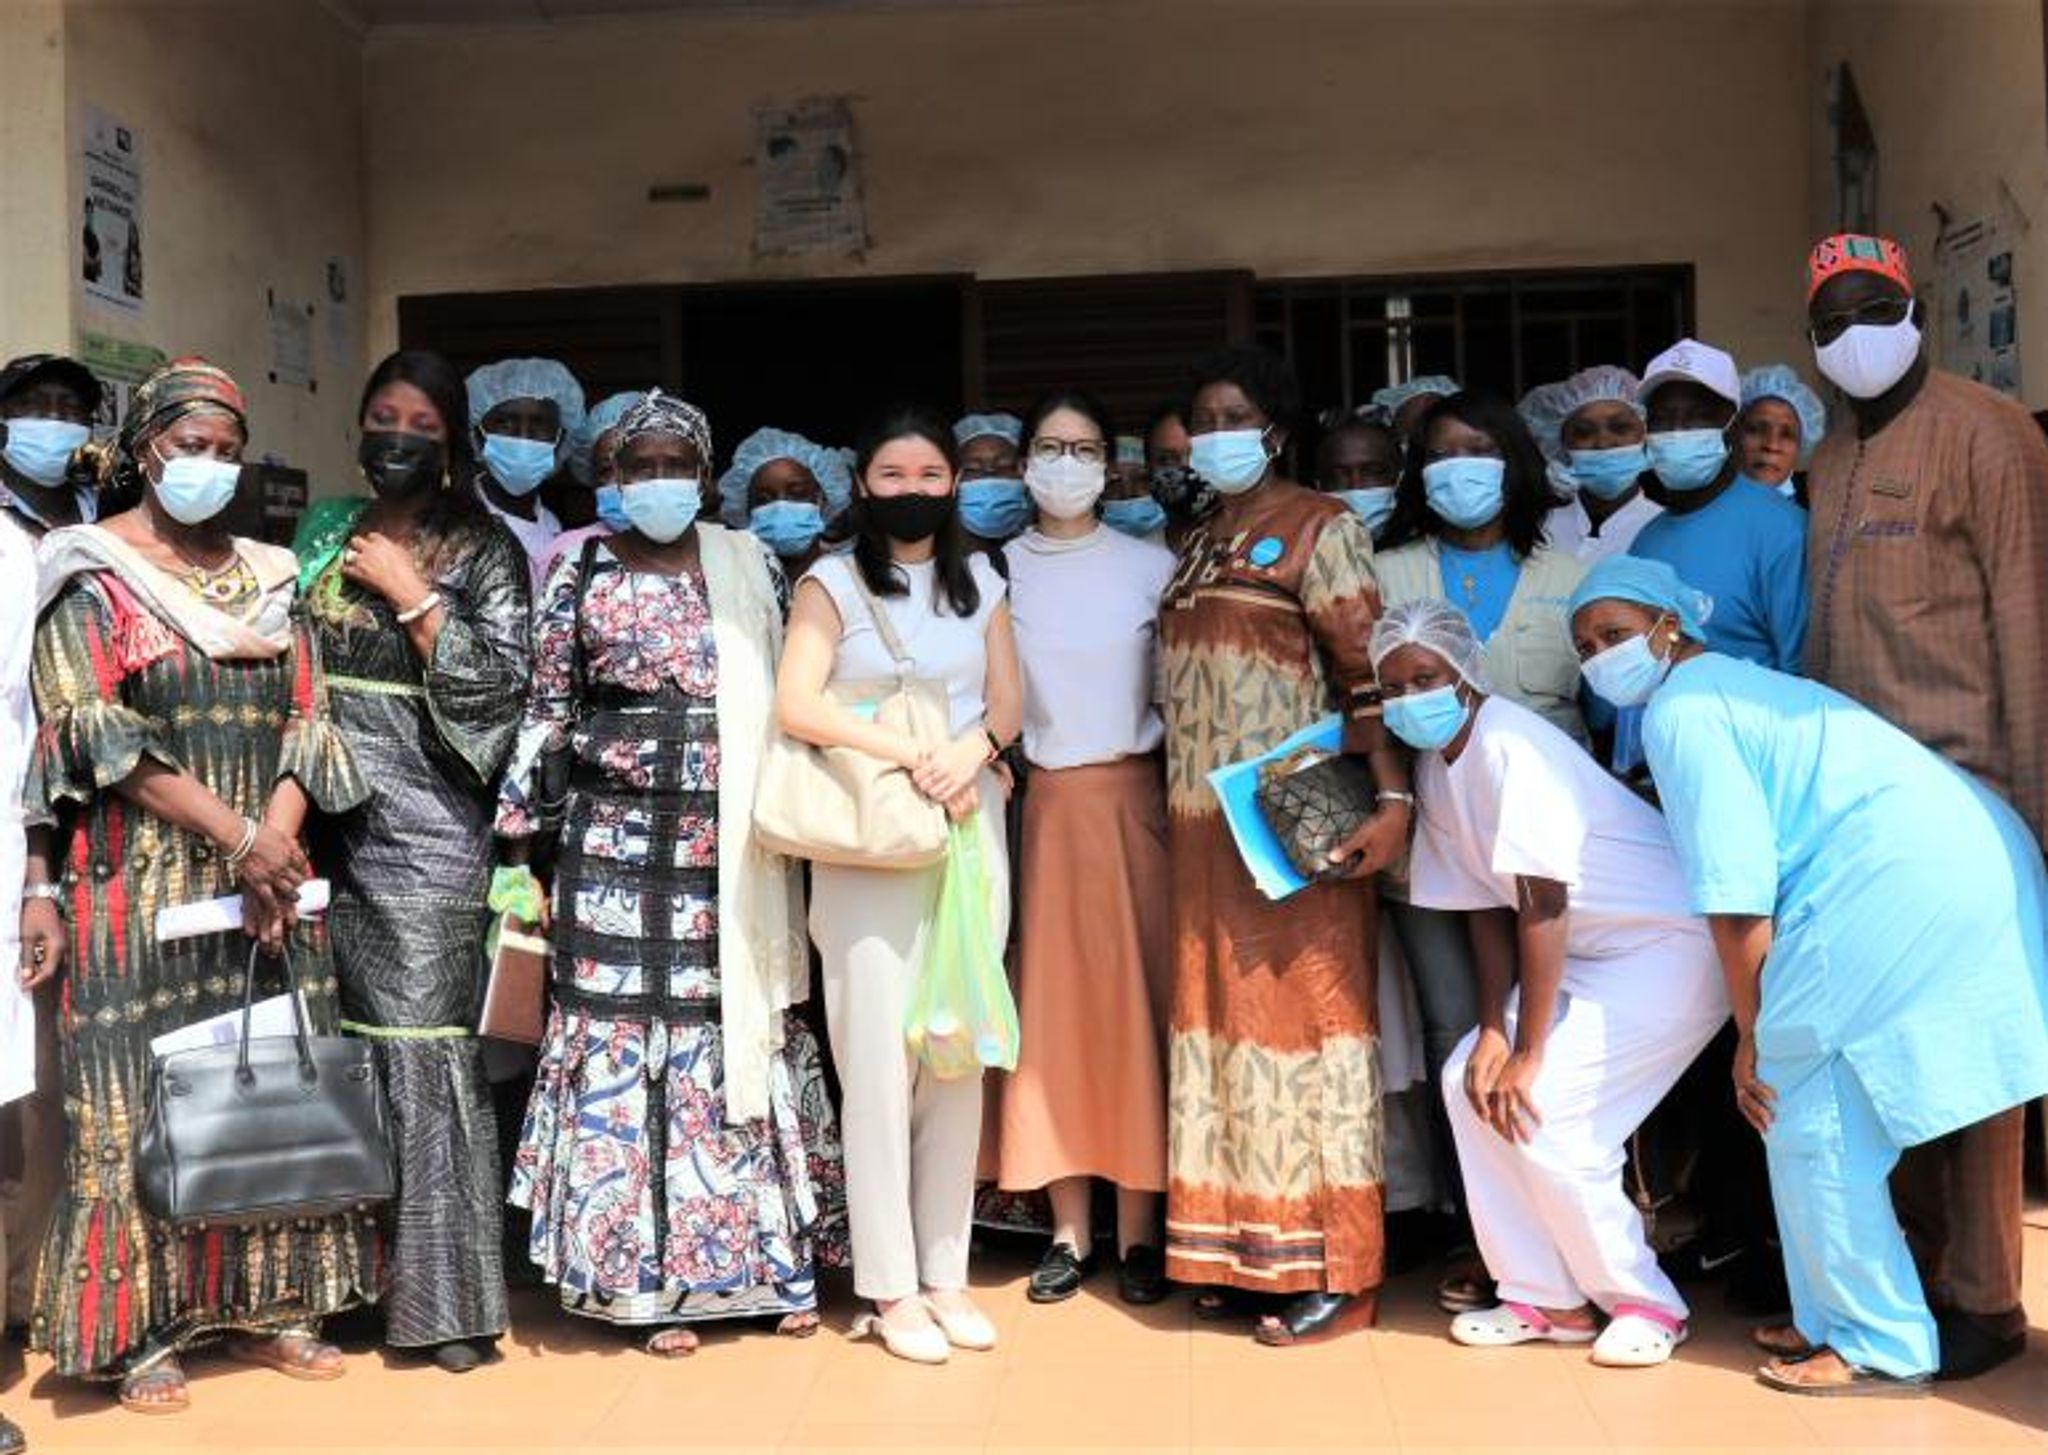 POLYCOPIÉ - Le Japon, à travers l'UNICEF, va financer en Guinée un projet visant à contribuer à réduire la mortalité et la morbidité liées au Covid-19 et aux maladies à potentiel épidémique, comme celle à virus Ébola. Foto: Unicef/Photo de presse/dpa